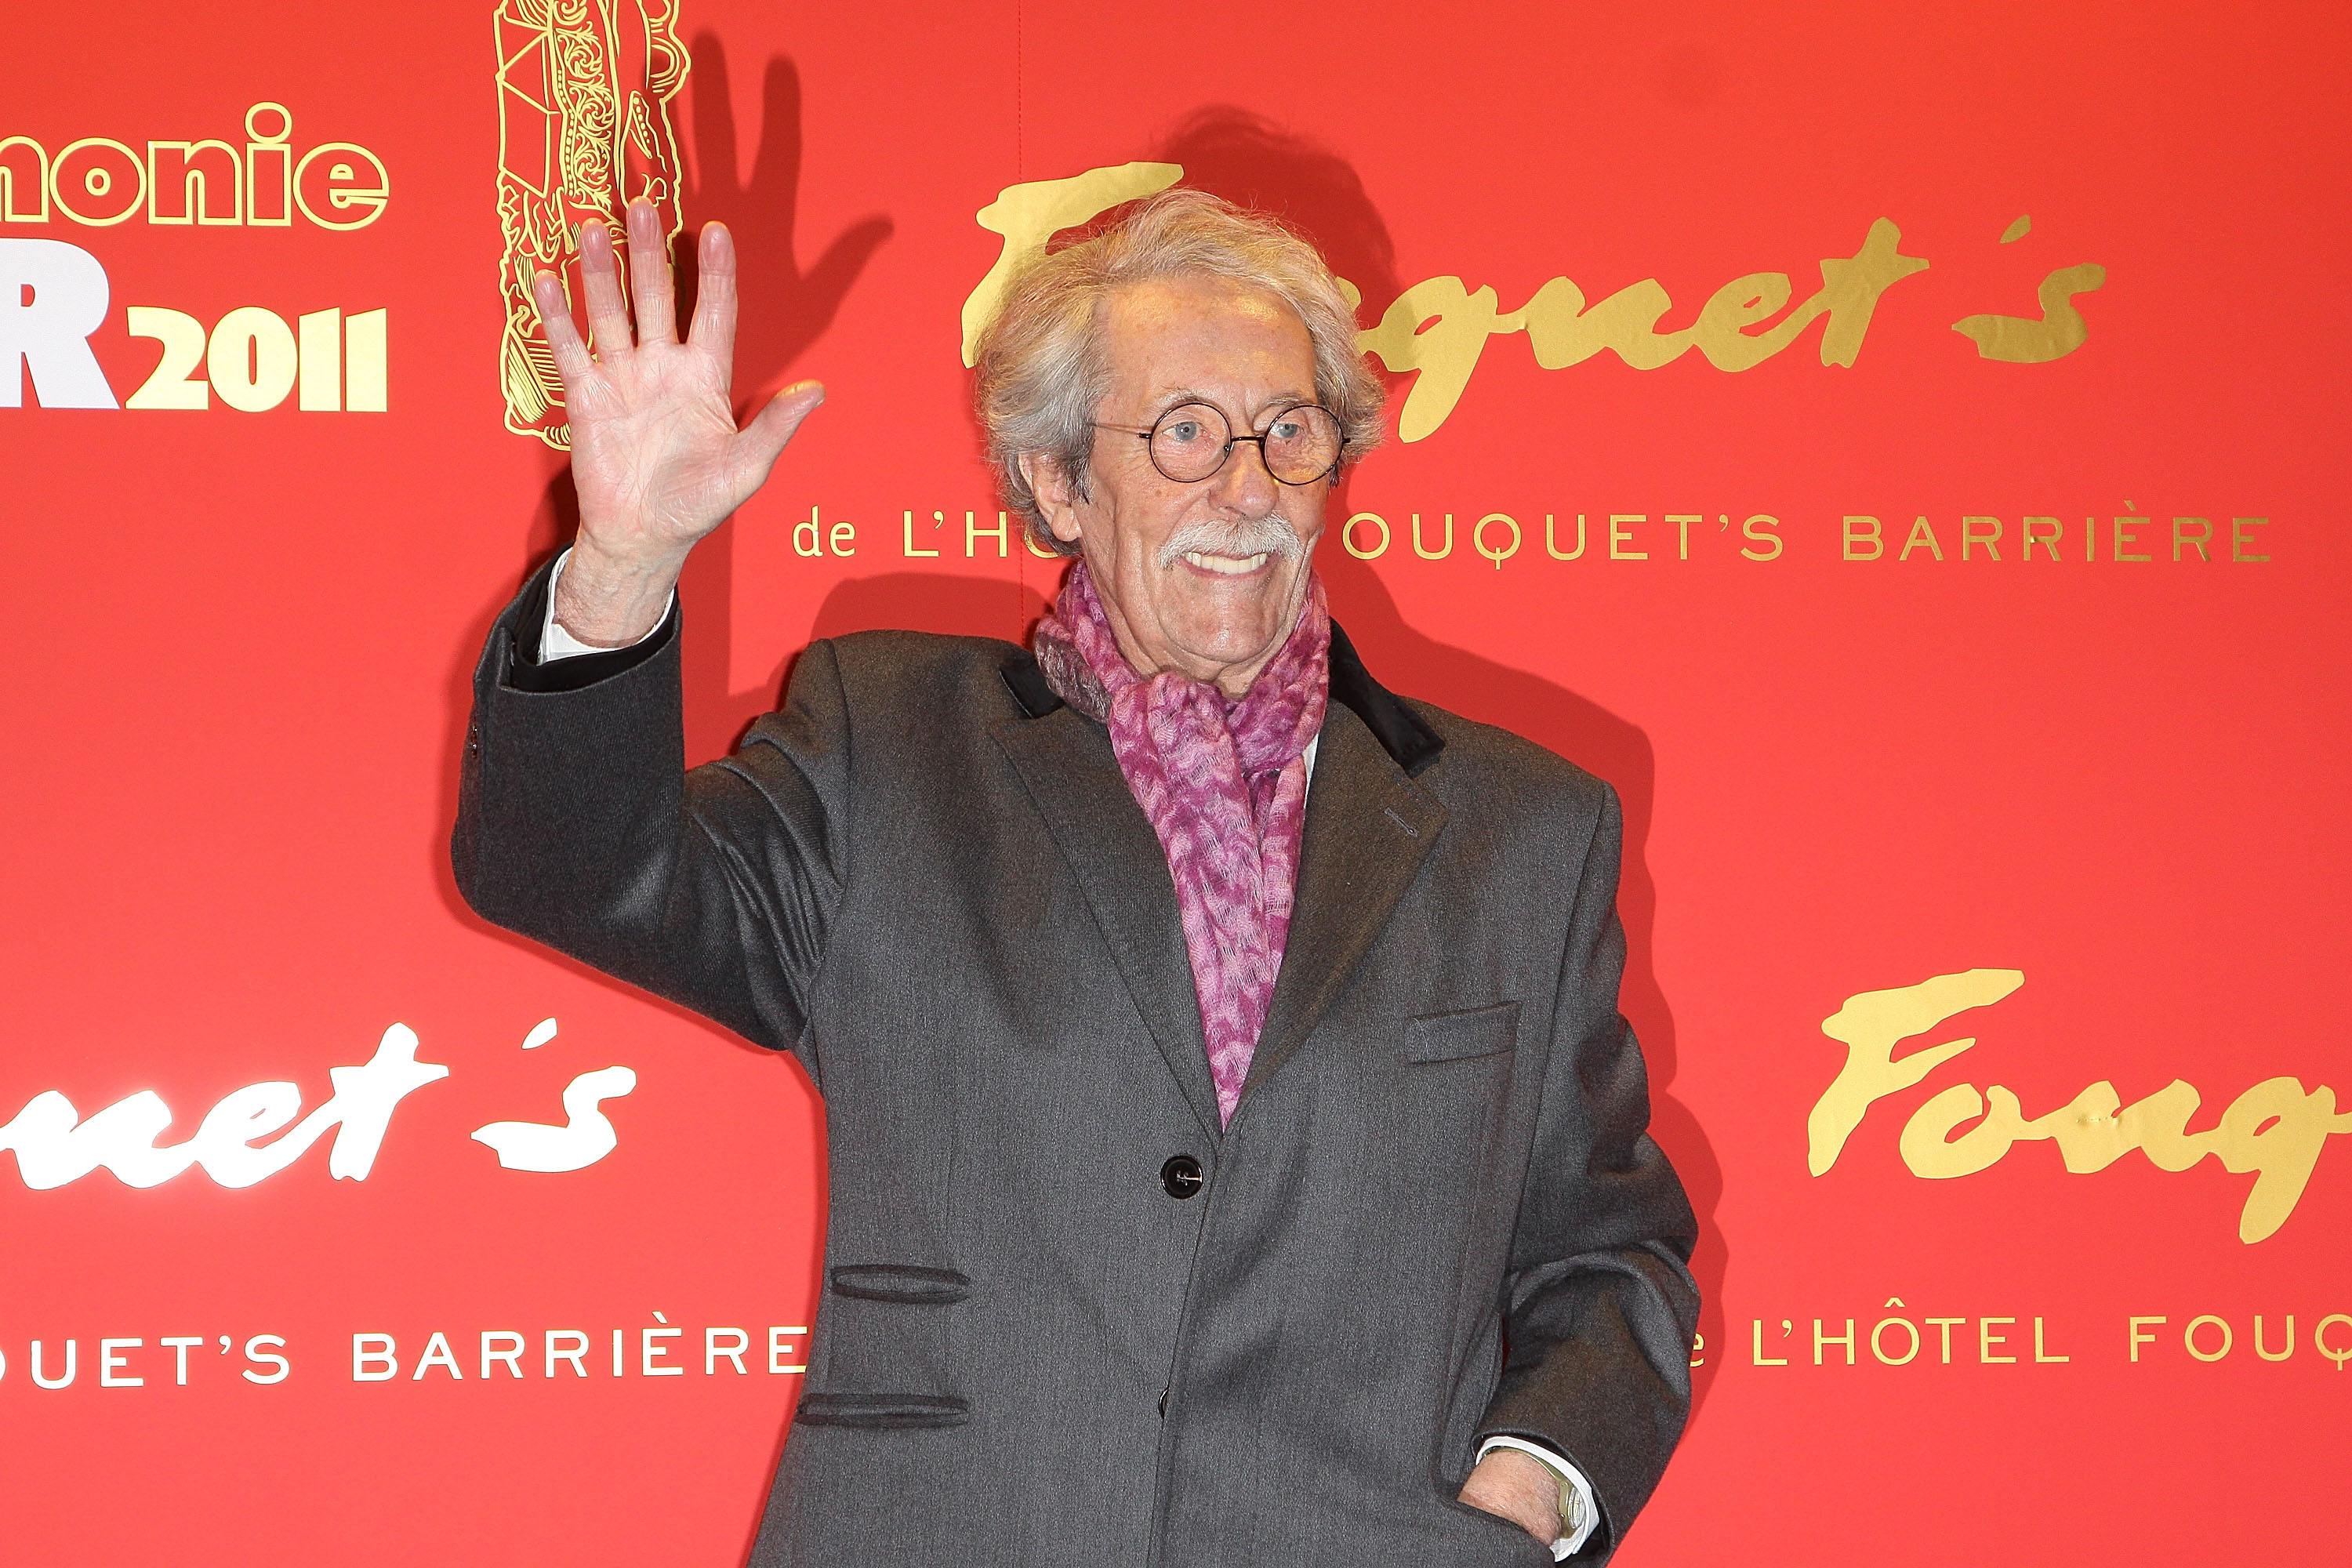 Der französische Schauspieler und Regisseur Jean Rochefort starb am 09. Oktober 2017. Der Franzose wurde durch Filme wie „Asterix & Obelix - Im Auftrag ihrer Majestät“, „Der Mann der Friseuse“ und der TV-Serie „Der Graf von Monte Christo“ berühmt. Rochefort wurde 87 Jahre alt.